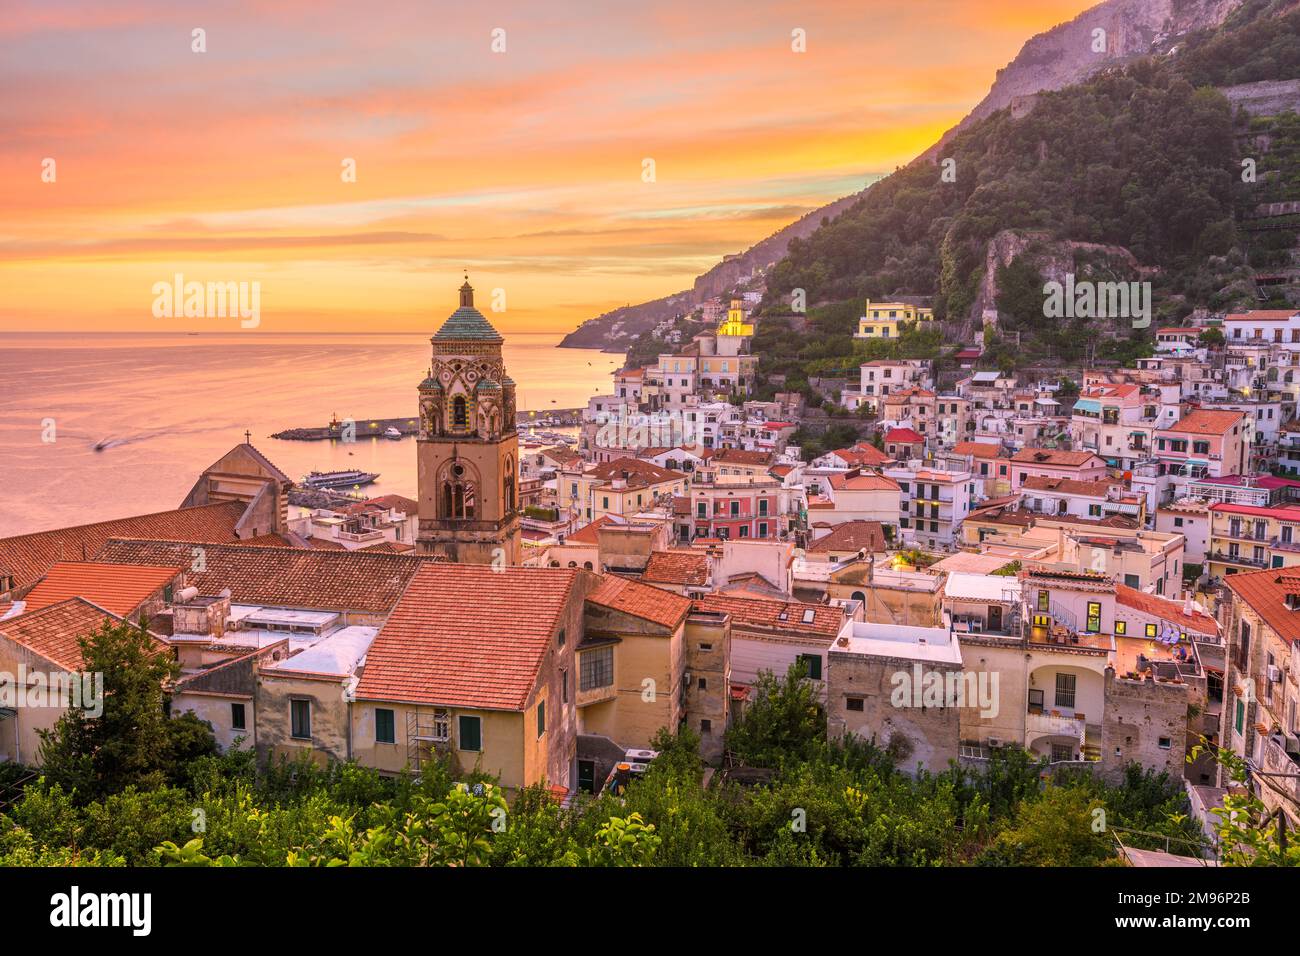 Amalfi, Italy on the Amalfi Coast at dusk. Stock Photo